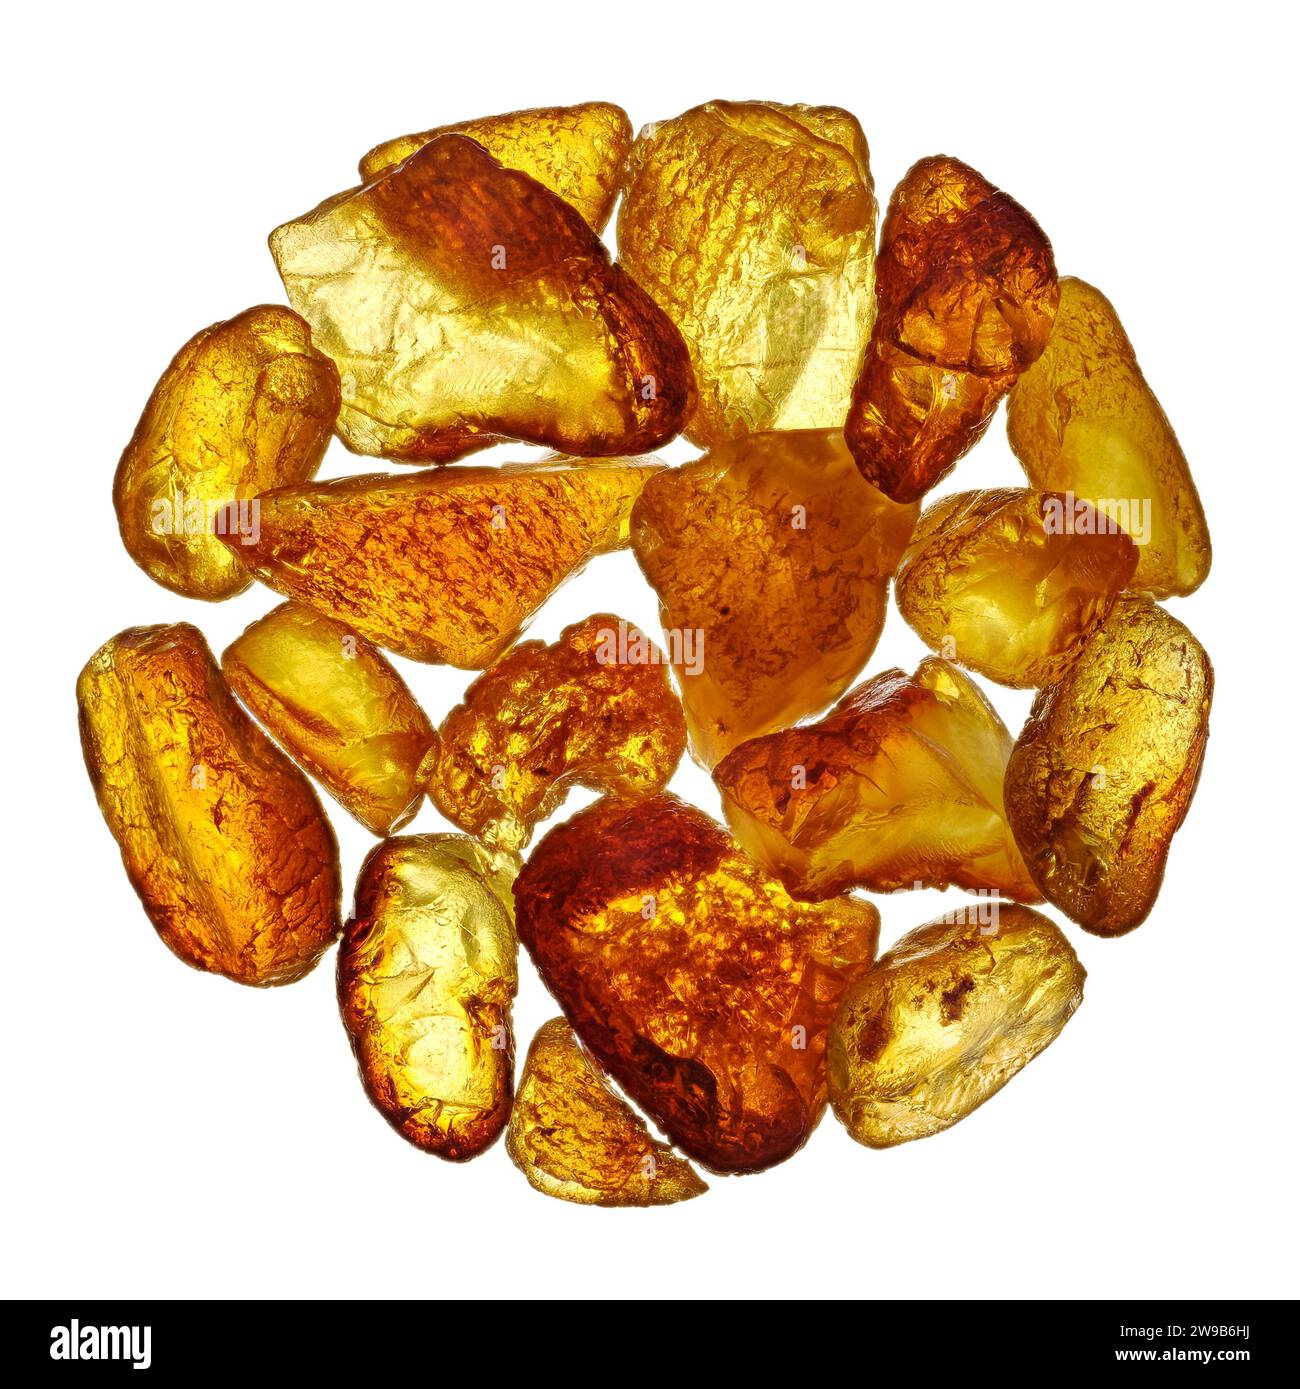 Groupe de galets d'ambre jaune minéral naturel, disposés en cercle, isolés sur fond blanc Banque D'Images